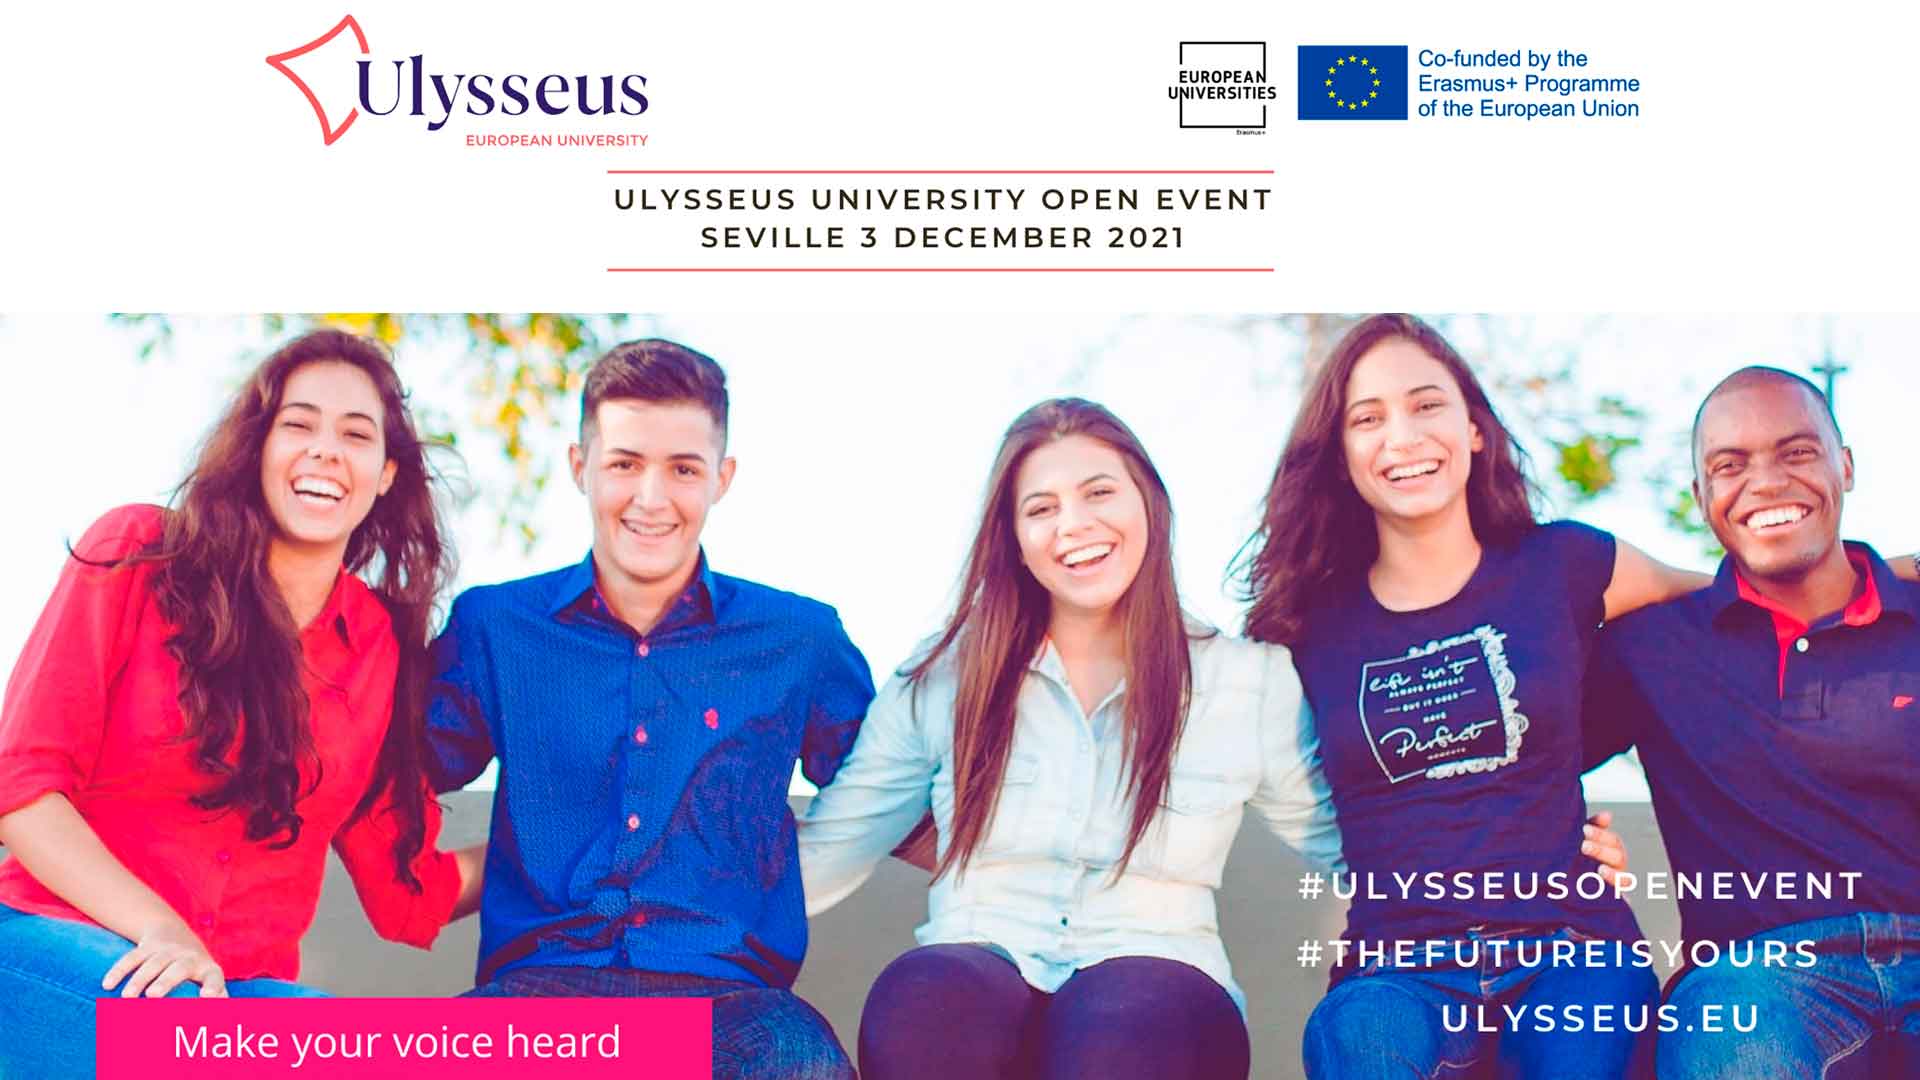 L’Université Européenne Ulysseus organise un « Open Event » pour que les étudiants s’expriment sur les sujets clés de l’éducation avant la Conférence sur l’avenir de l’Europe au printemps prochain